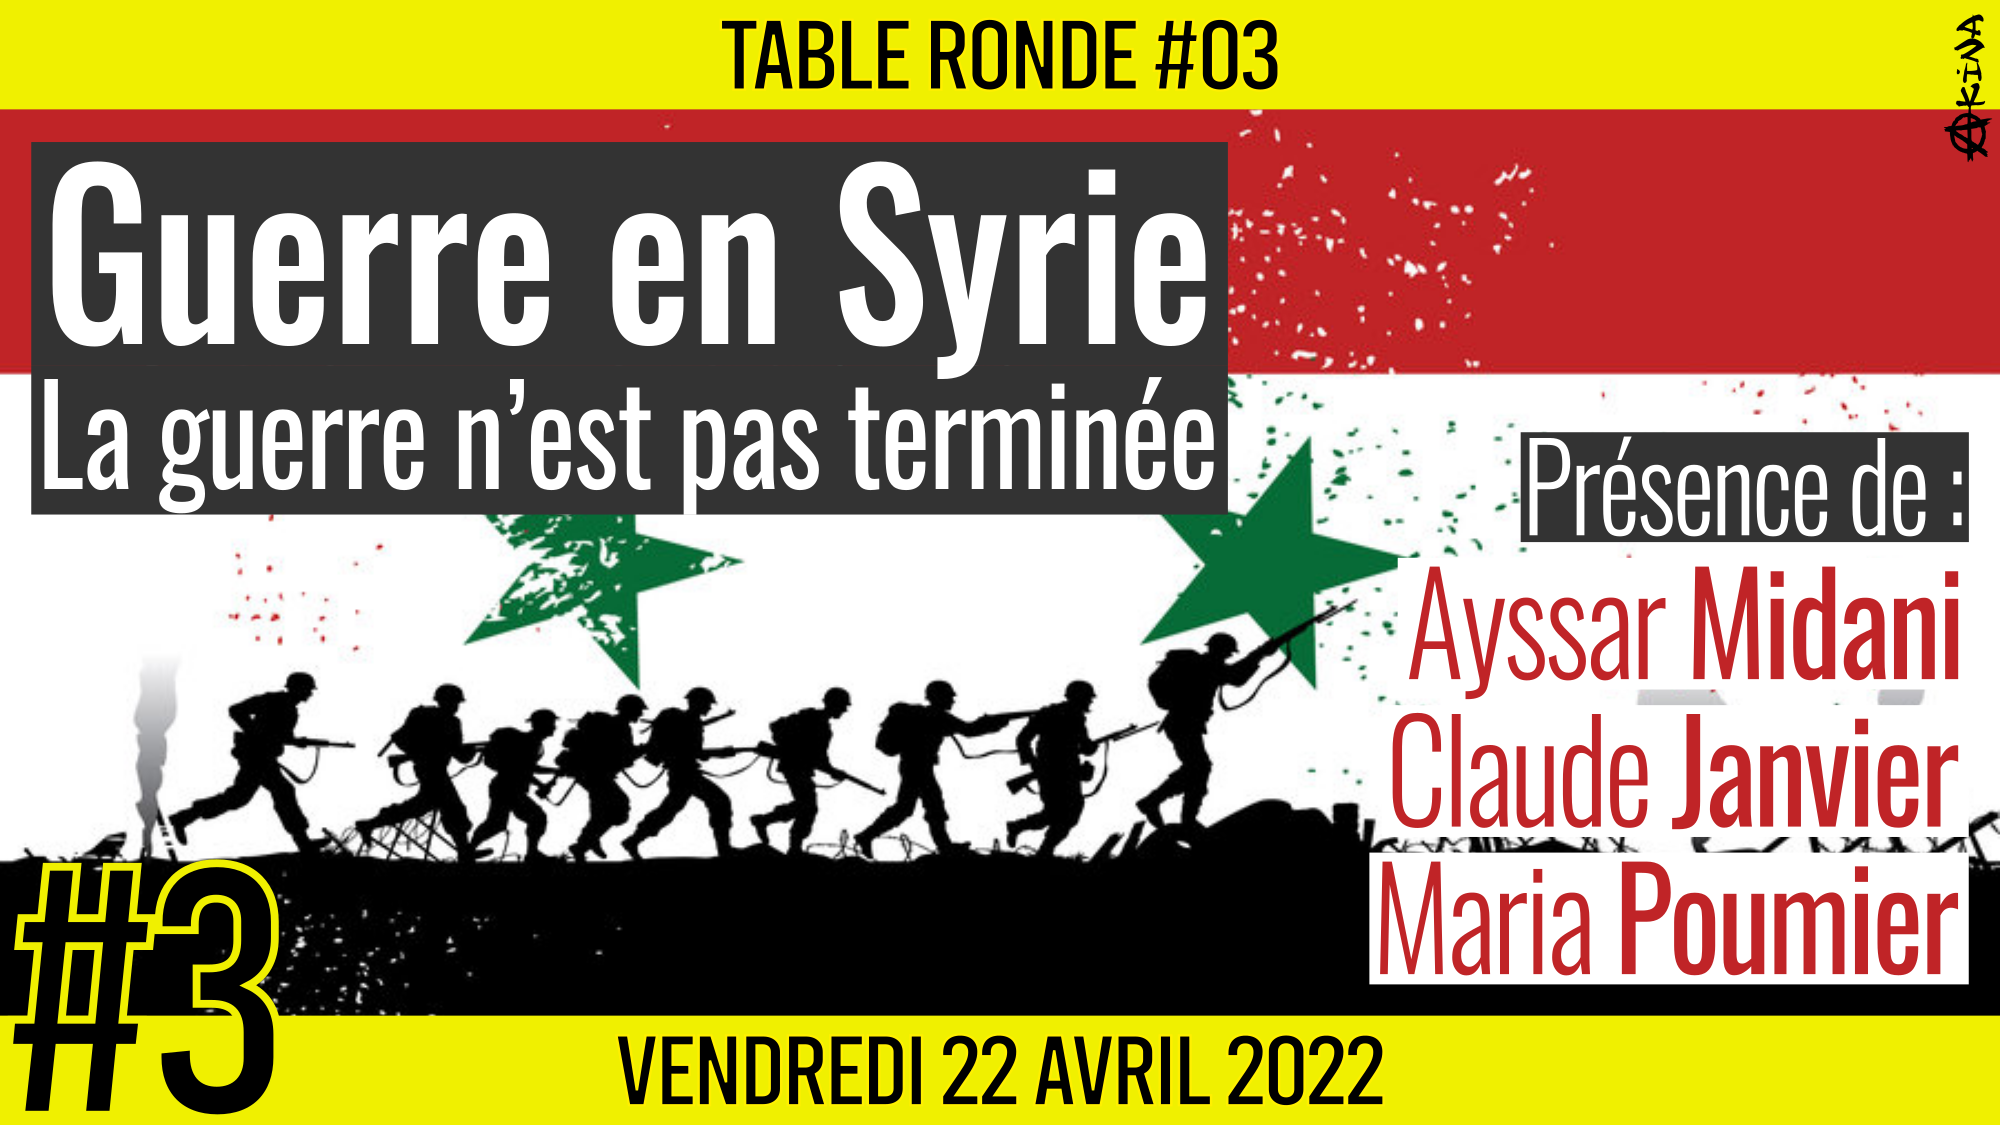 🎡 TABLE RONDE #03 👥 Ayssar Midani, Claude Janvier & Maria Poumier 🎯 Guerre en Syrie : La guerre n’est pas terminée 📆 22-04-2022